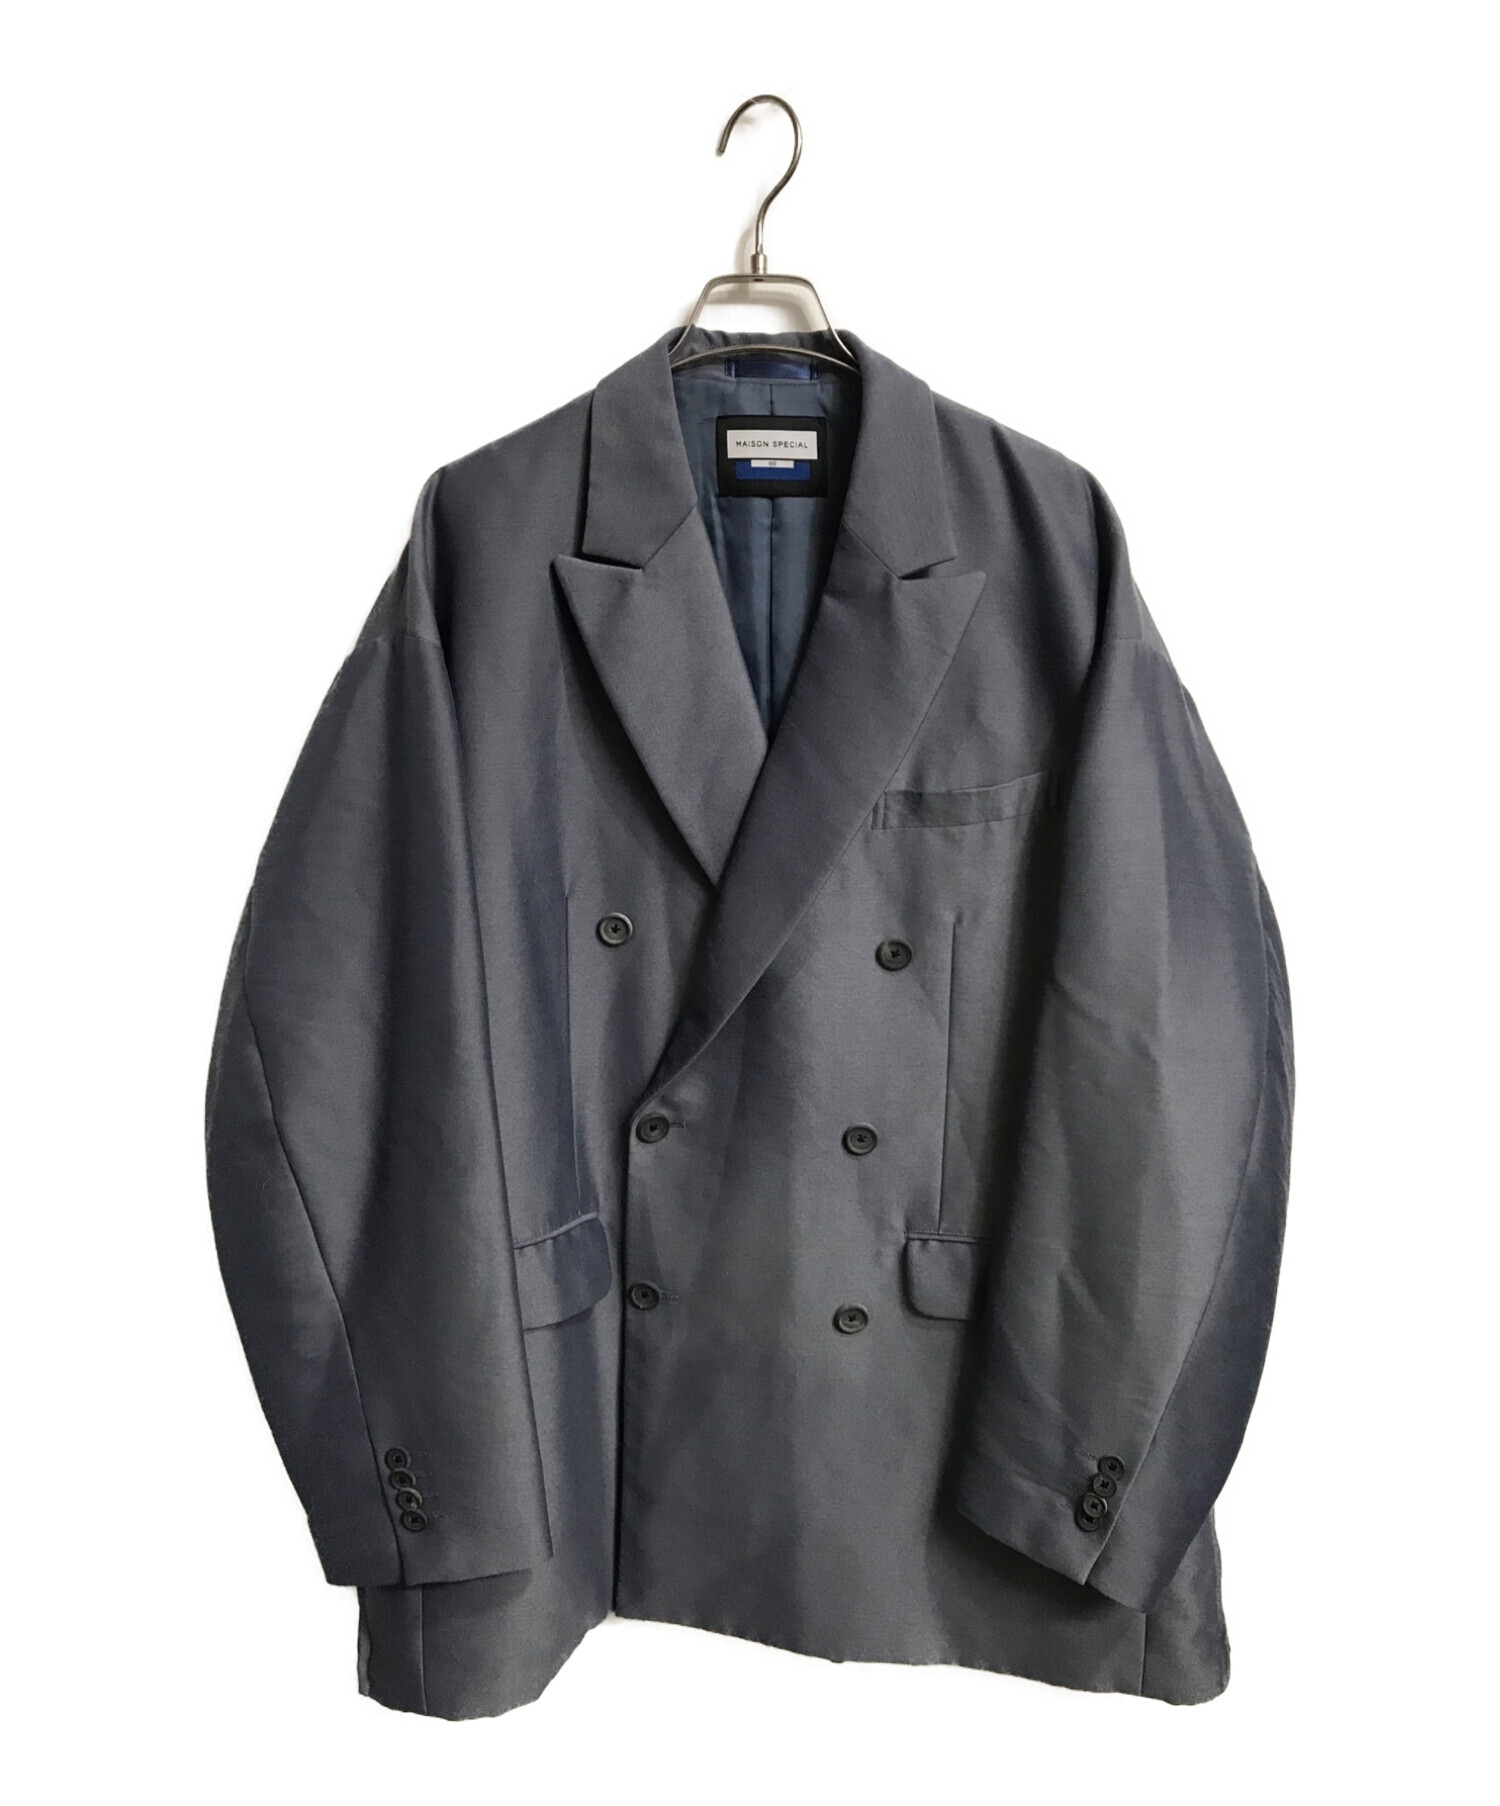 6,210円backribbonPearlpleatsfrill jacket